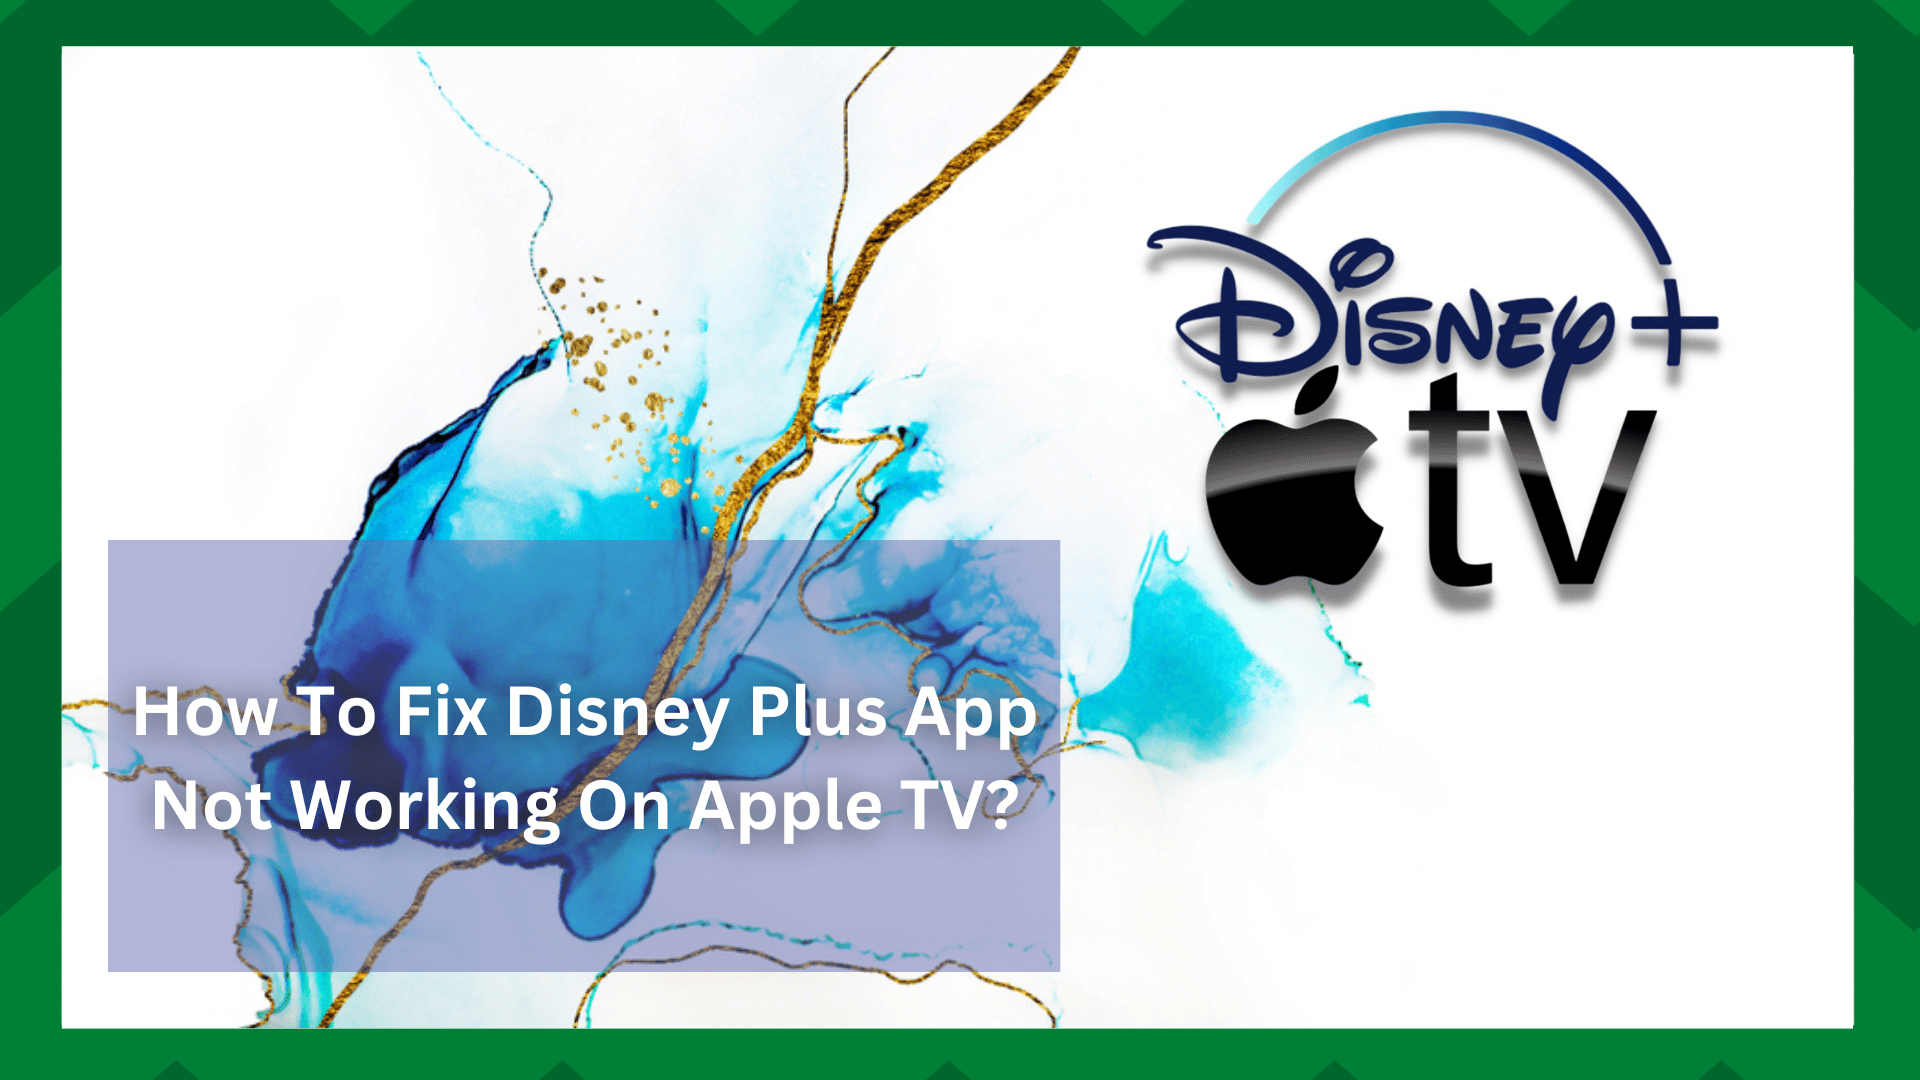 4 możliwe rozwiązania dla aplikacji Disney Plus nie działającej na Apple TV